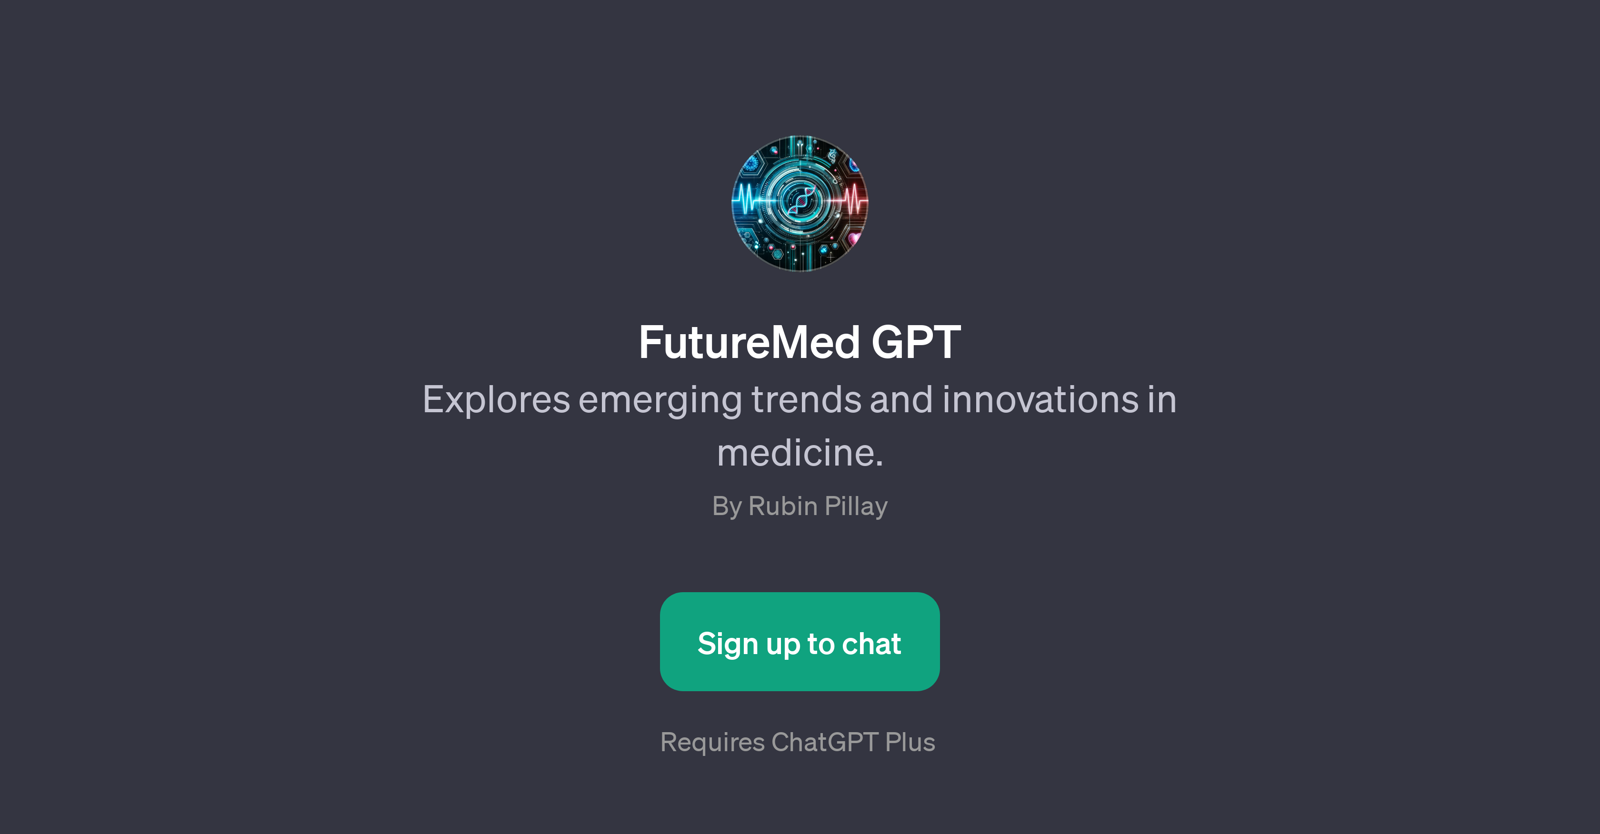 FutureMed GPT website